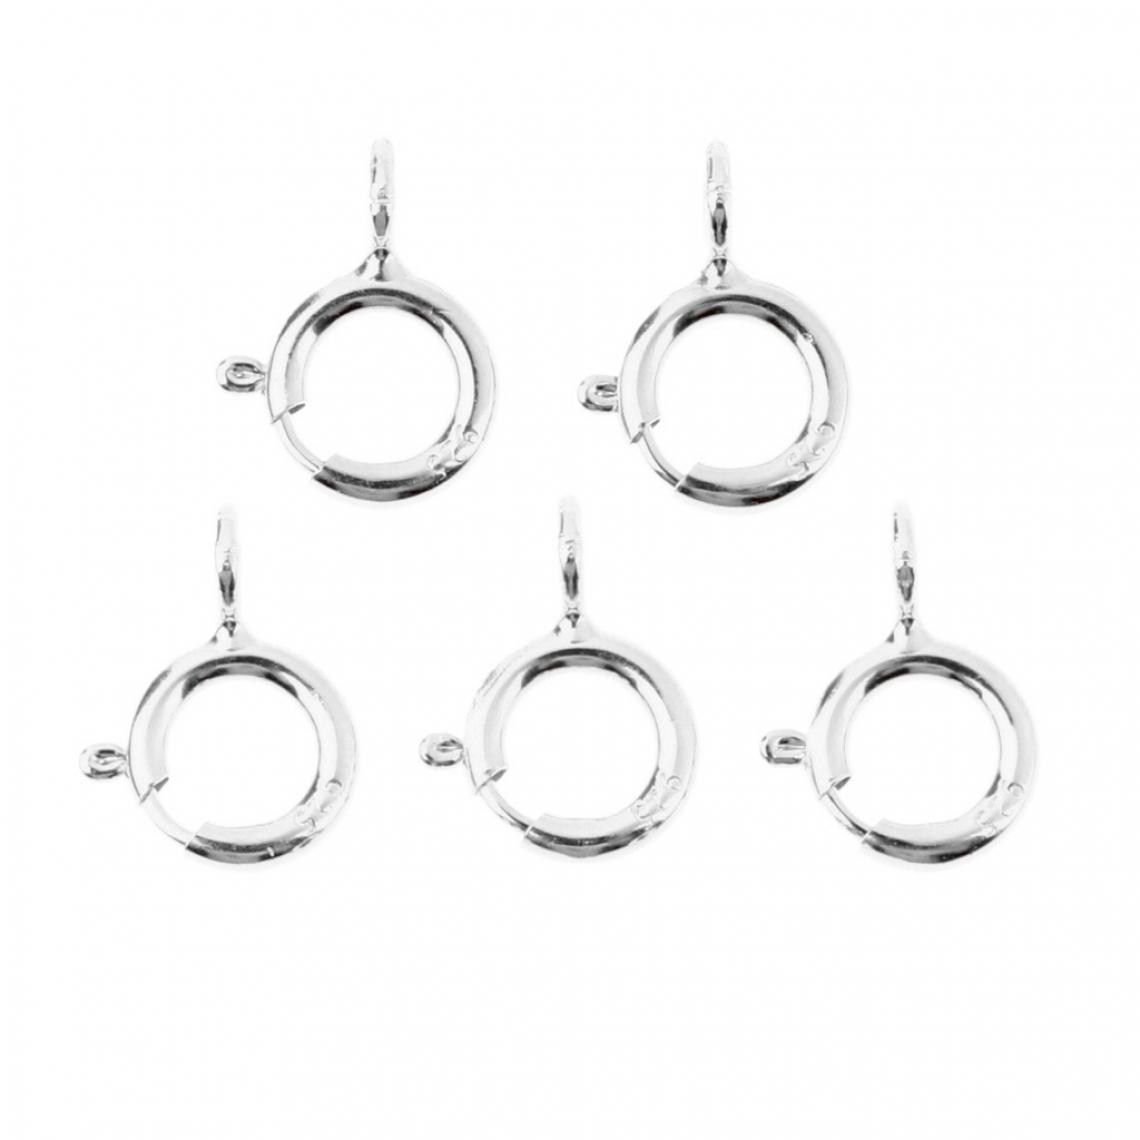 marque generique - 5pcs printemps anneaux fermoirs bijoux fabrication de connecteurs fermoirs 5mm argent - Perles